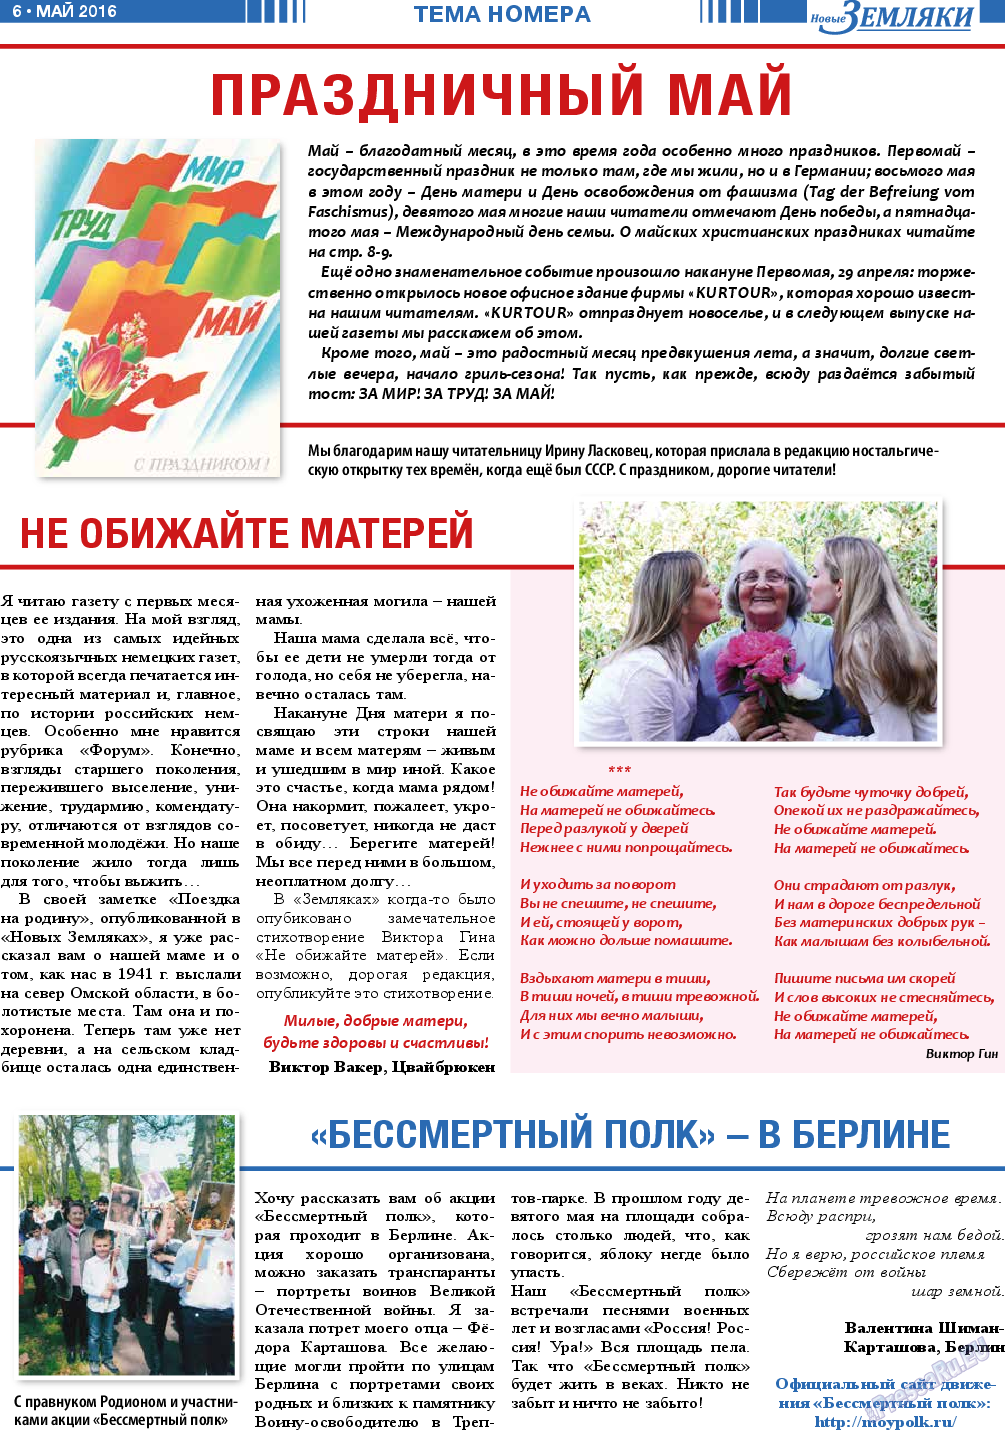 Новые Земляки, газета. 2016 №5 стр.6